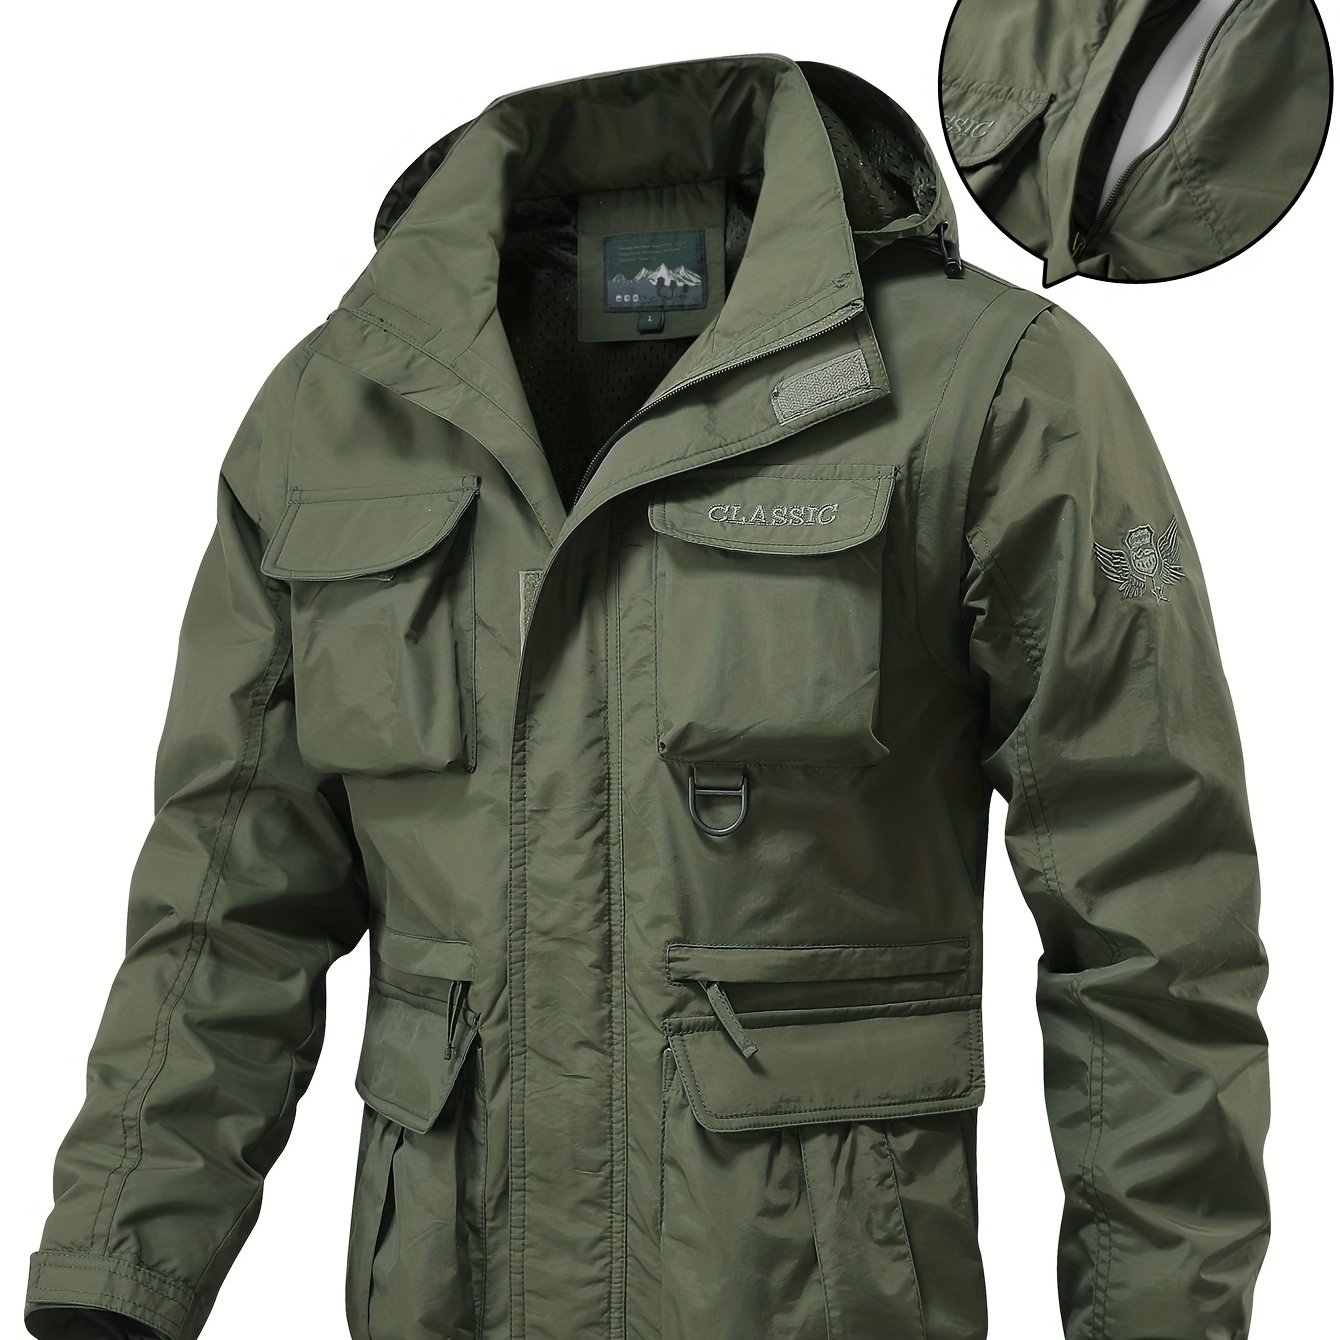 Detachable Windbreaker Hooded Jacket, Men's Casual Waterproof Multi Pocket  Cargo Jacket Vest For Outdoor Activities